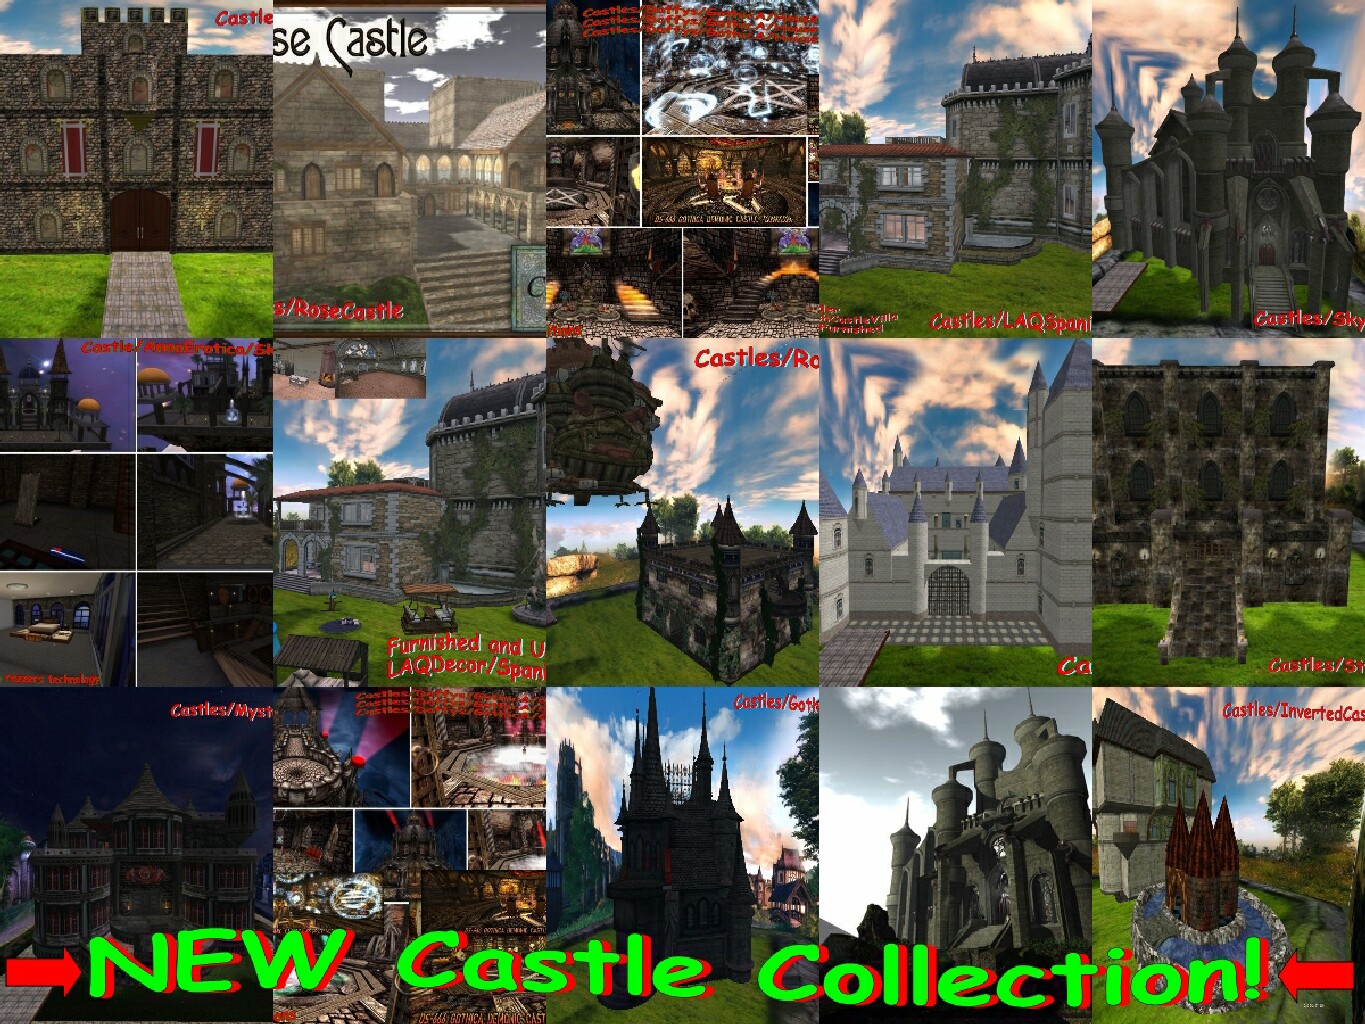 Castle collage 05-2020